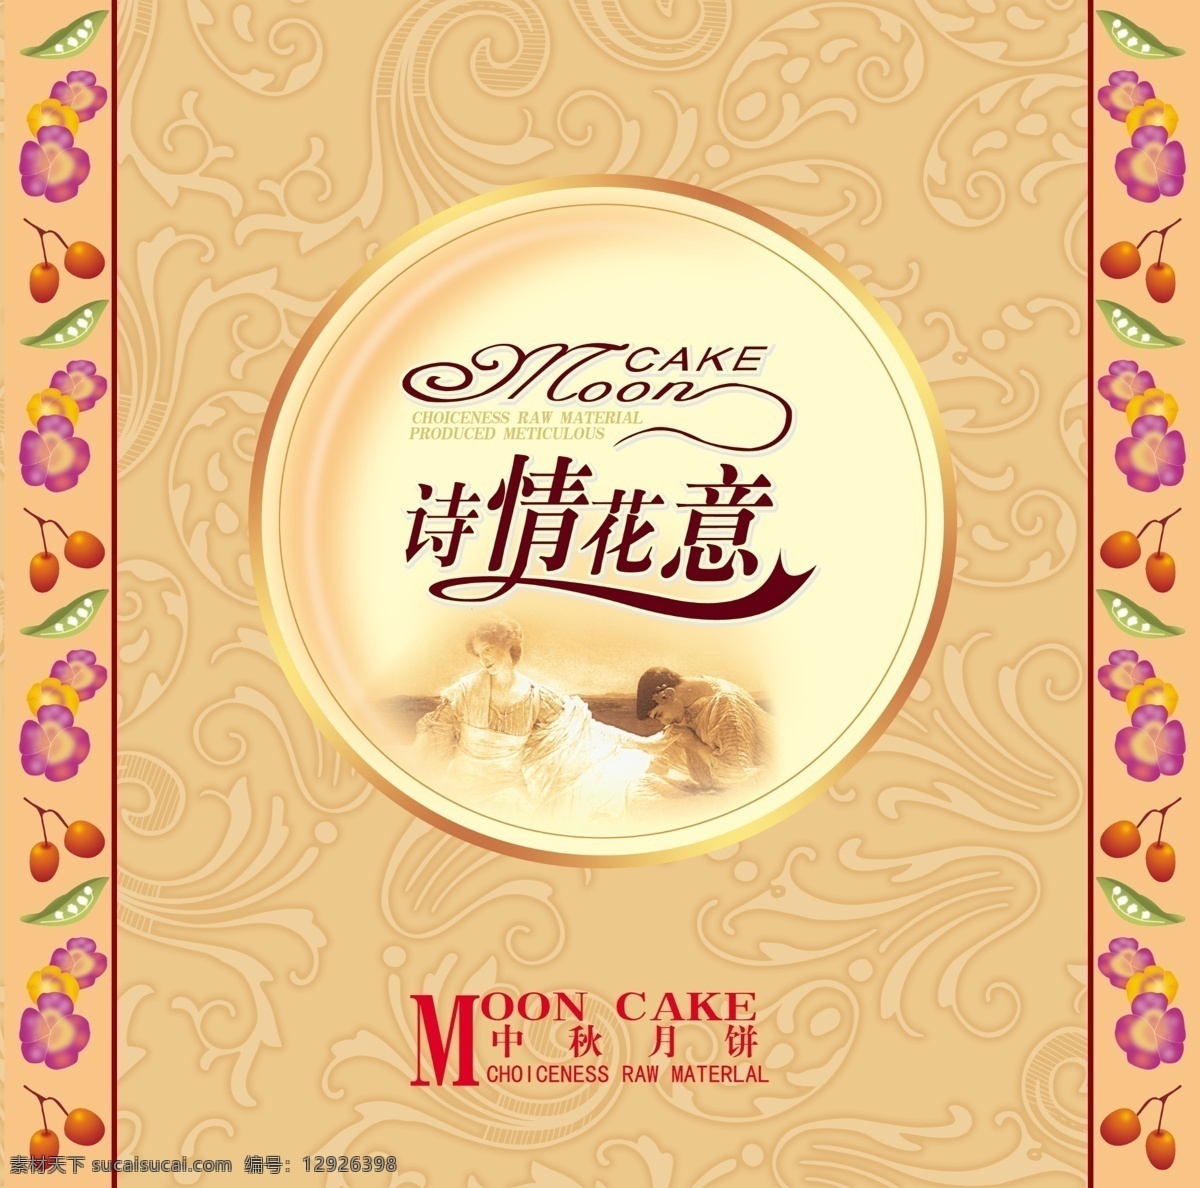 中秋月饼 包装设计 包装 传统 中国风 民族 中秋 月饼 黄色